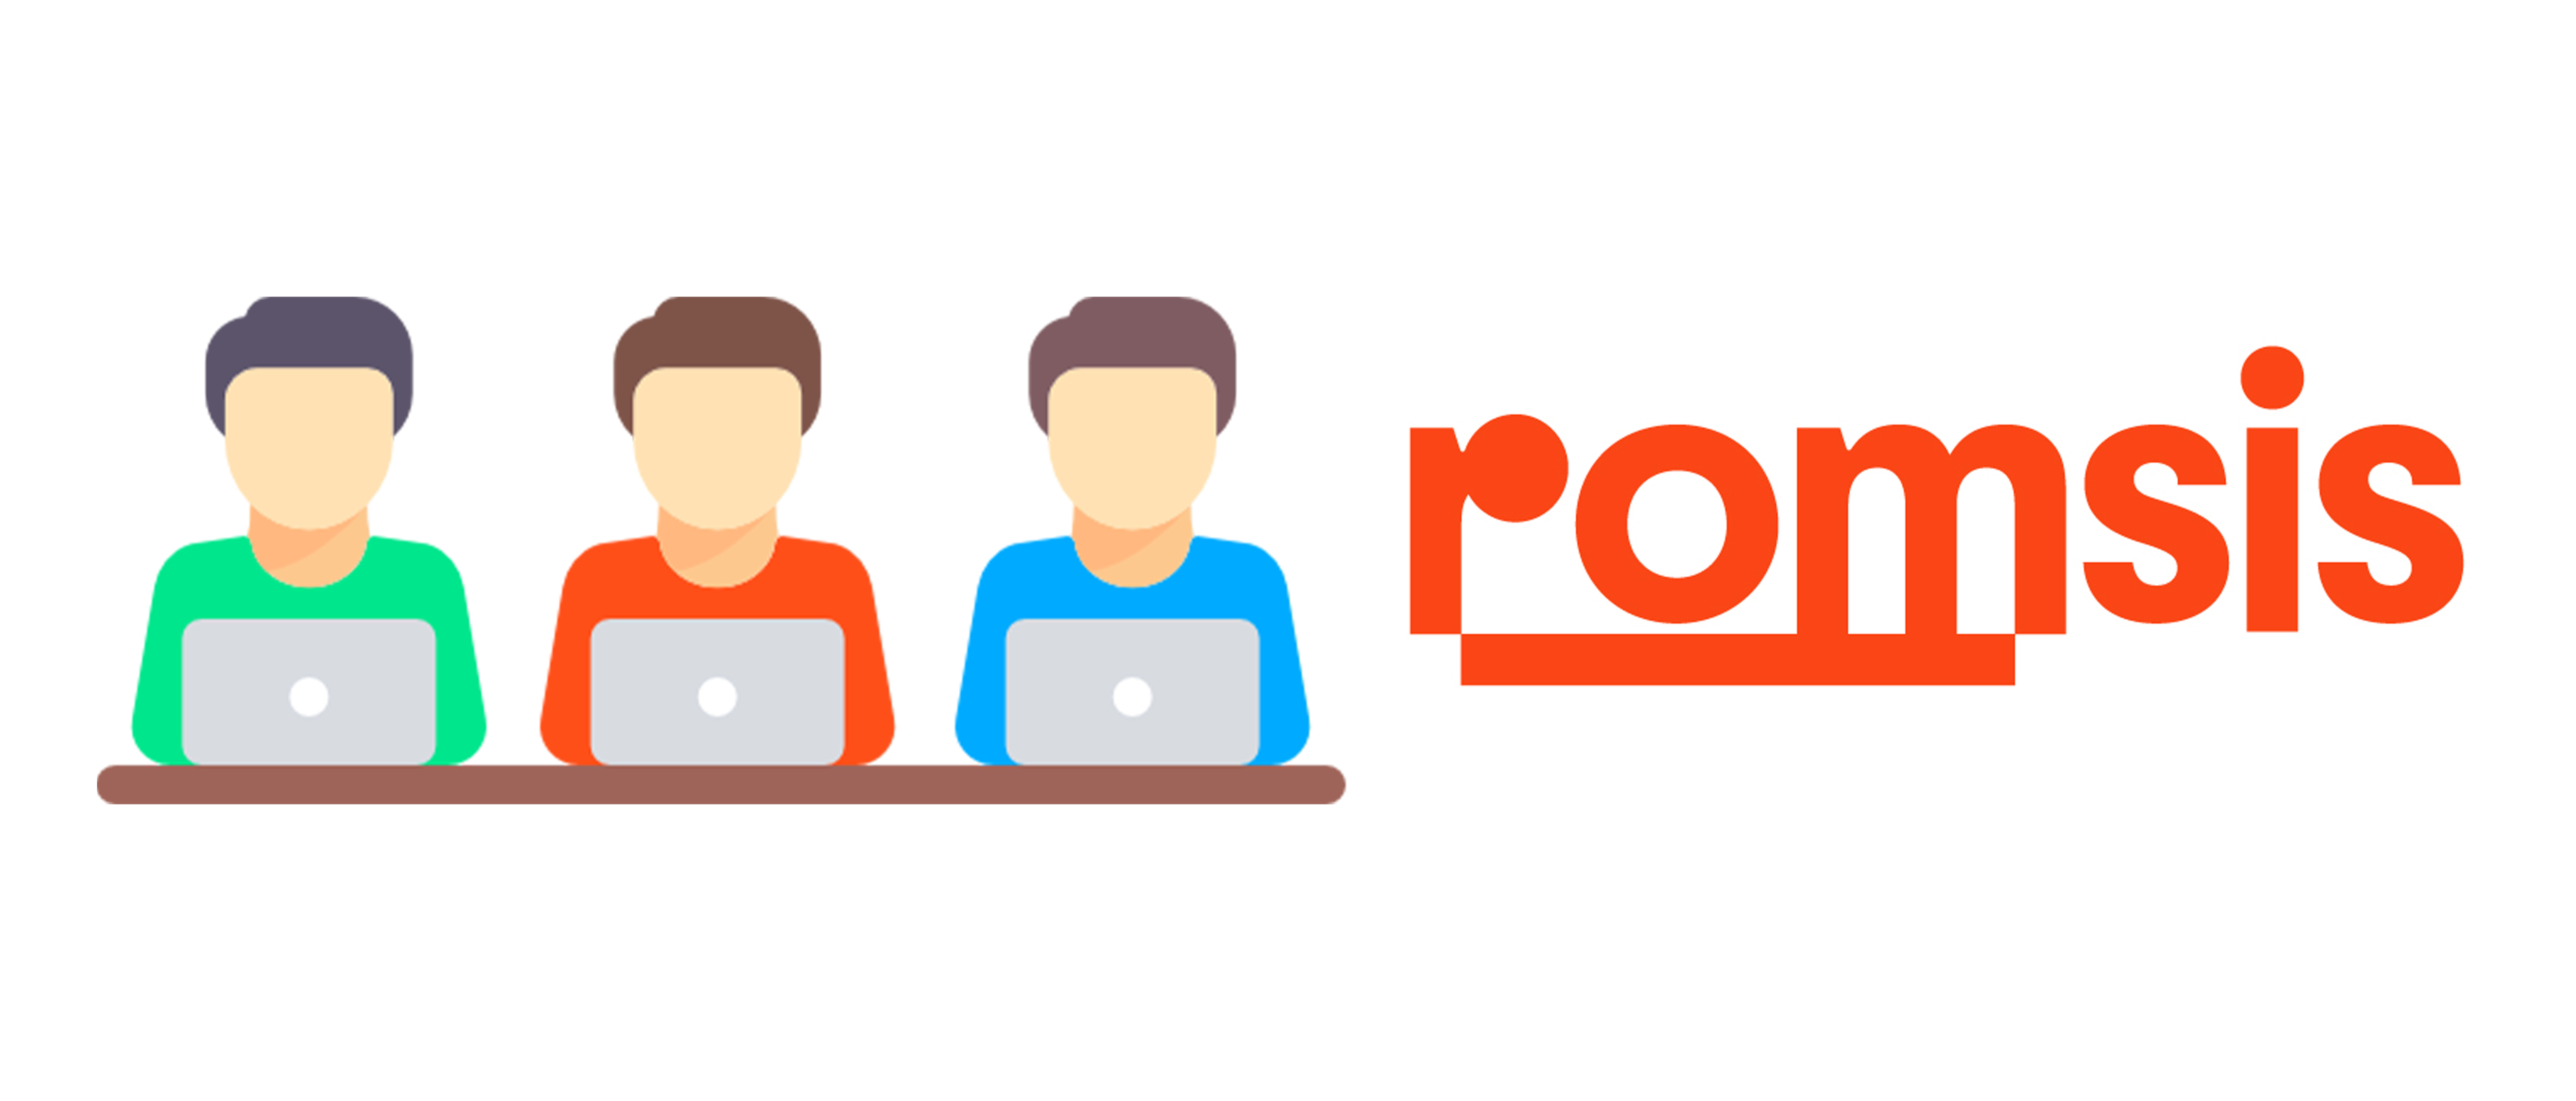 Romsis Yazılım iletişim sayfası